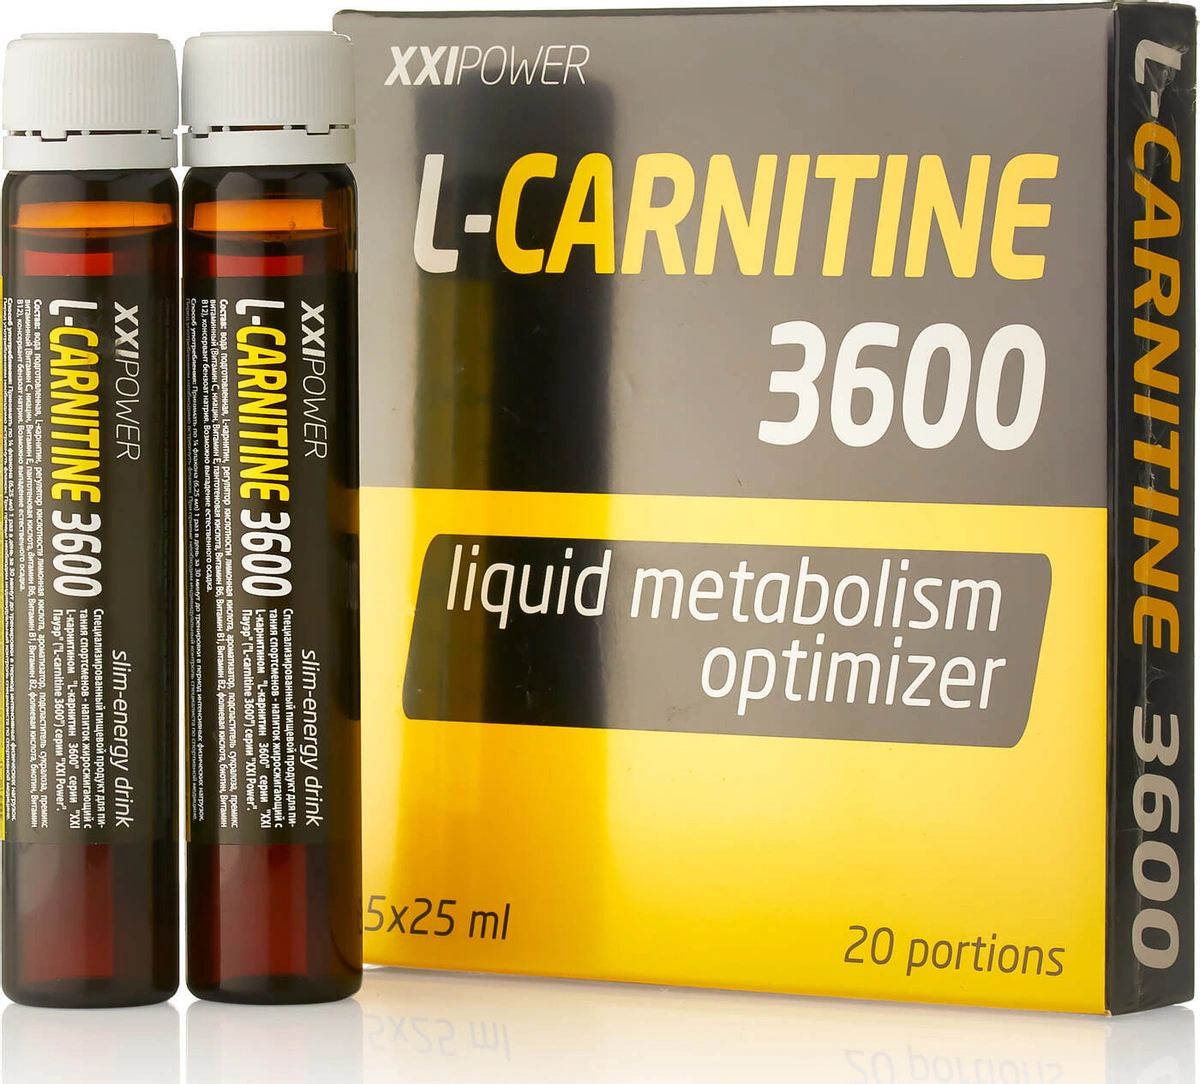 L-карнитин 3600, 5 шотов по 25 мл, XXIPower - фото 1